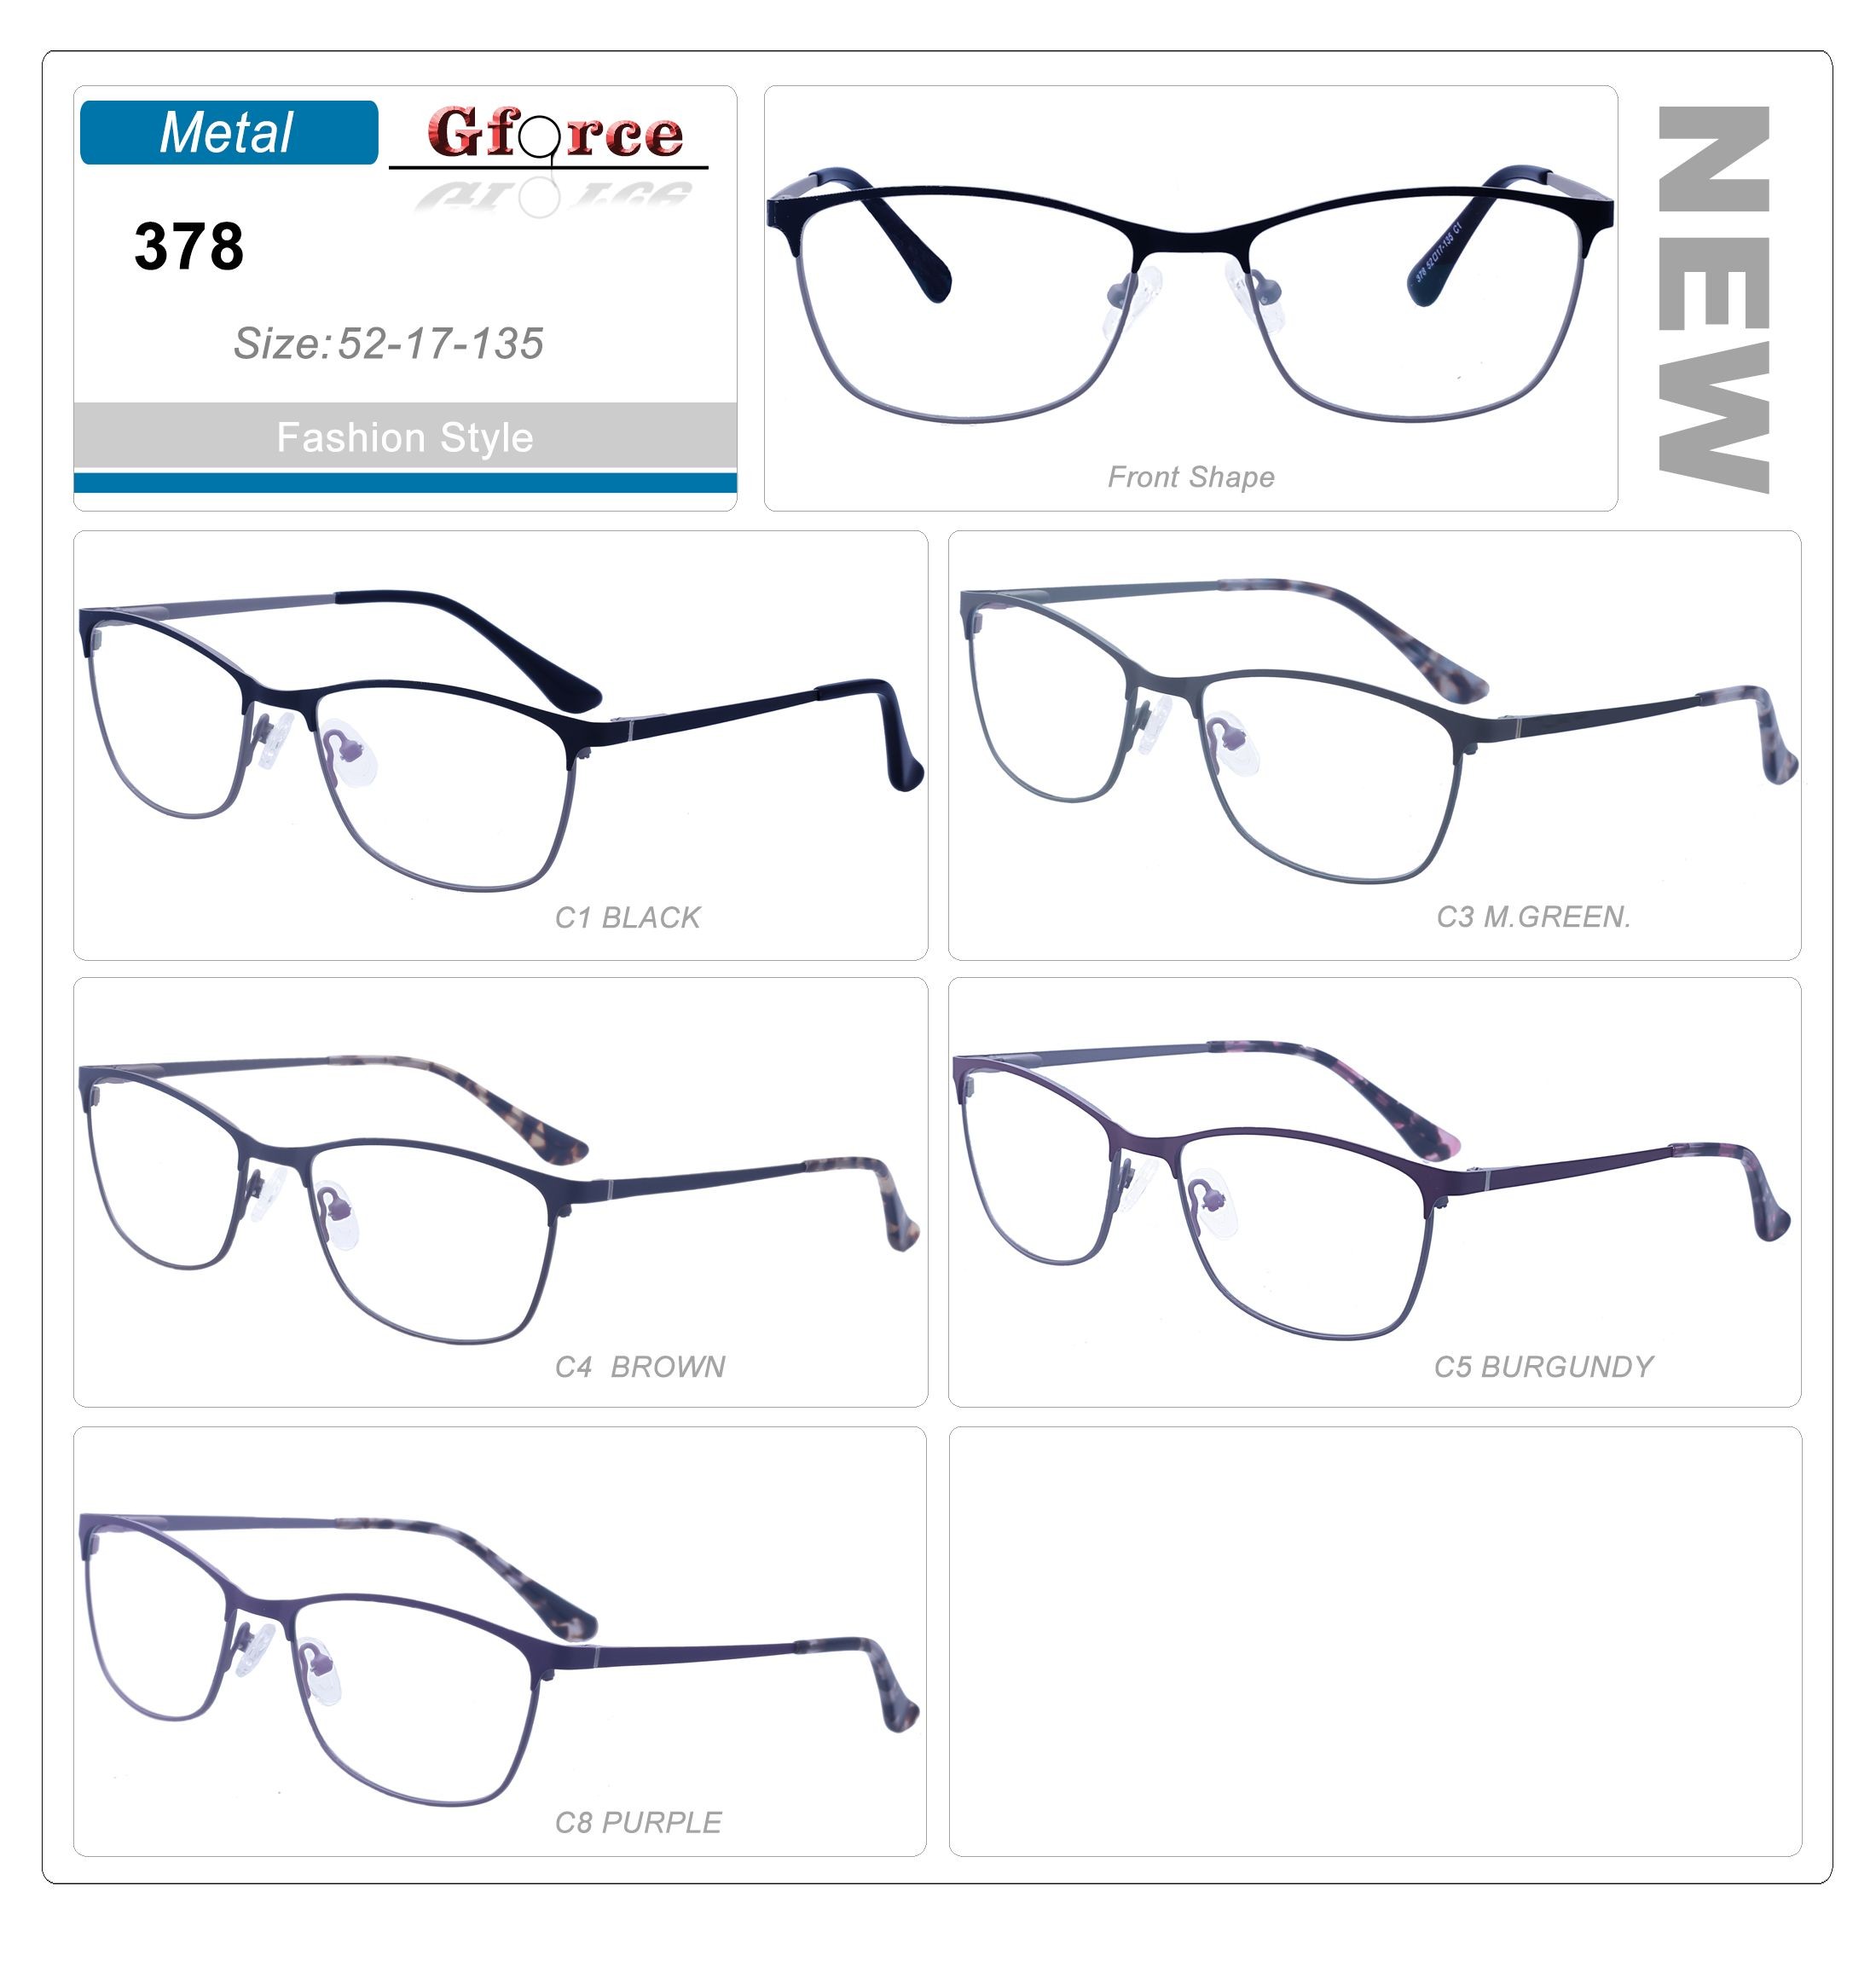 Metal frame acetate temples eye glasses popular eyeglasses fashion eyewear